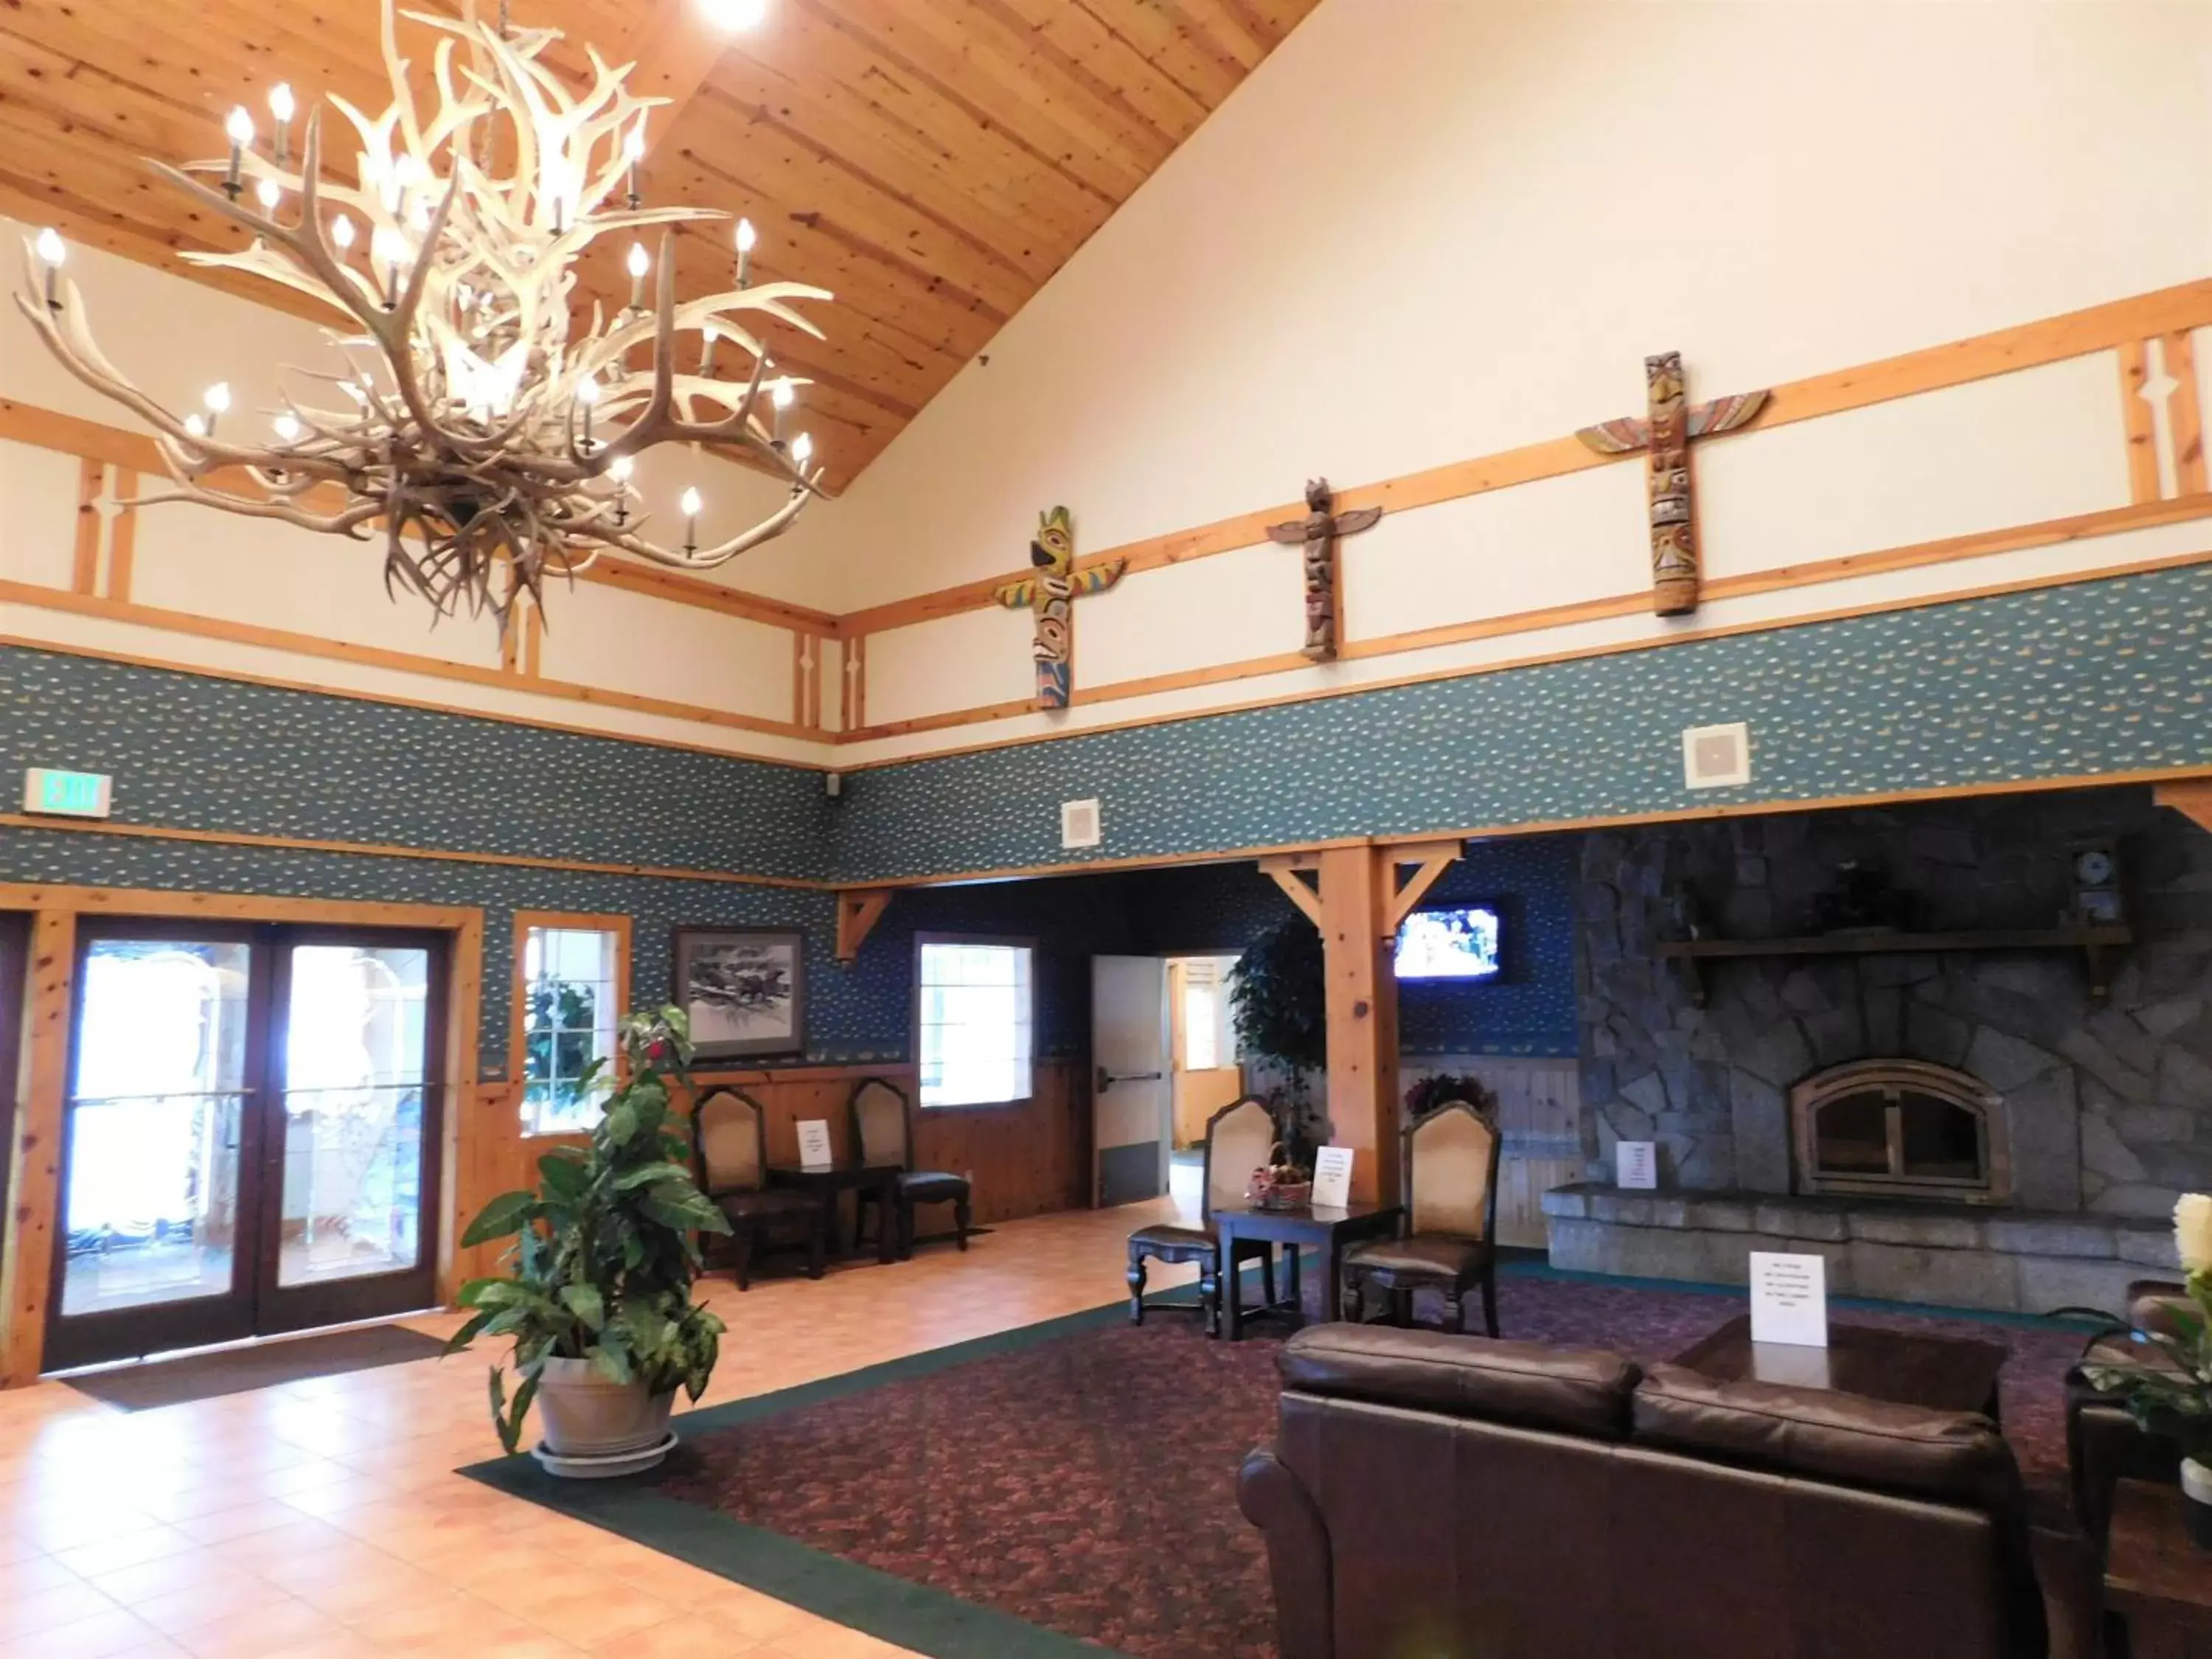 Lobby or reception, Lobby/Reception in The Summit Inn